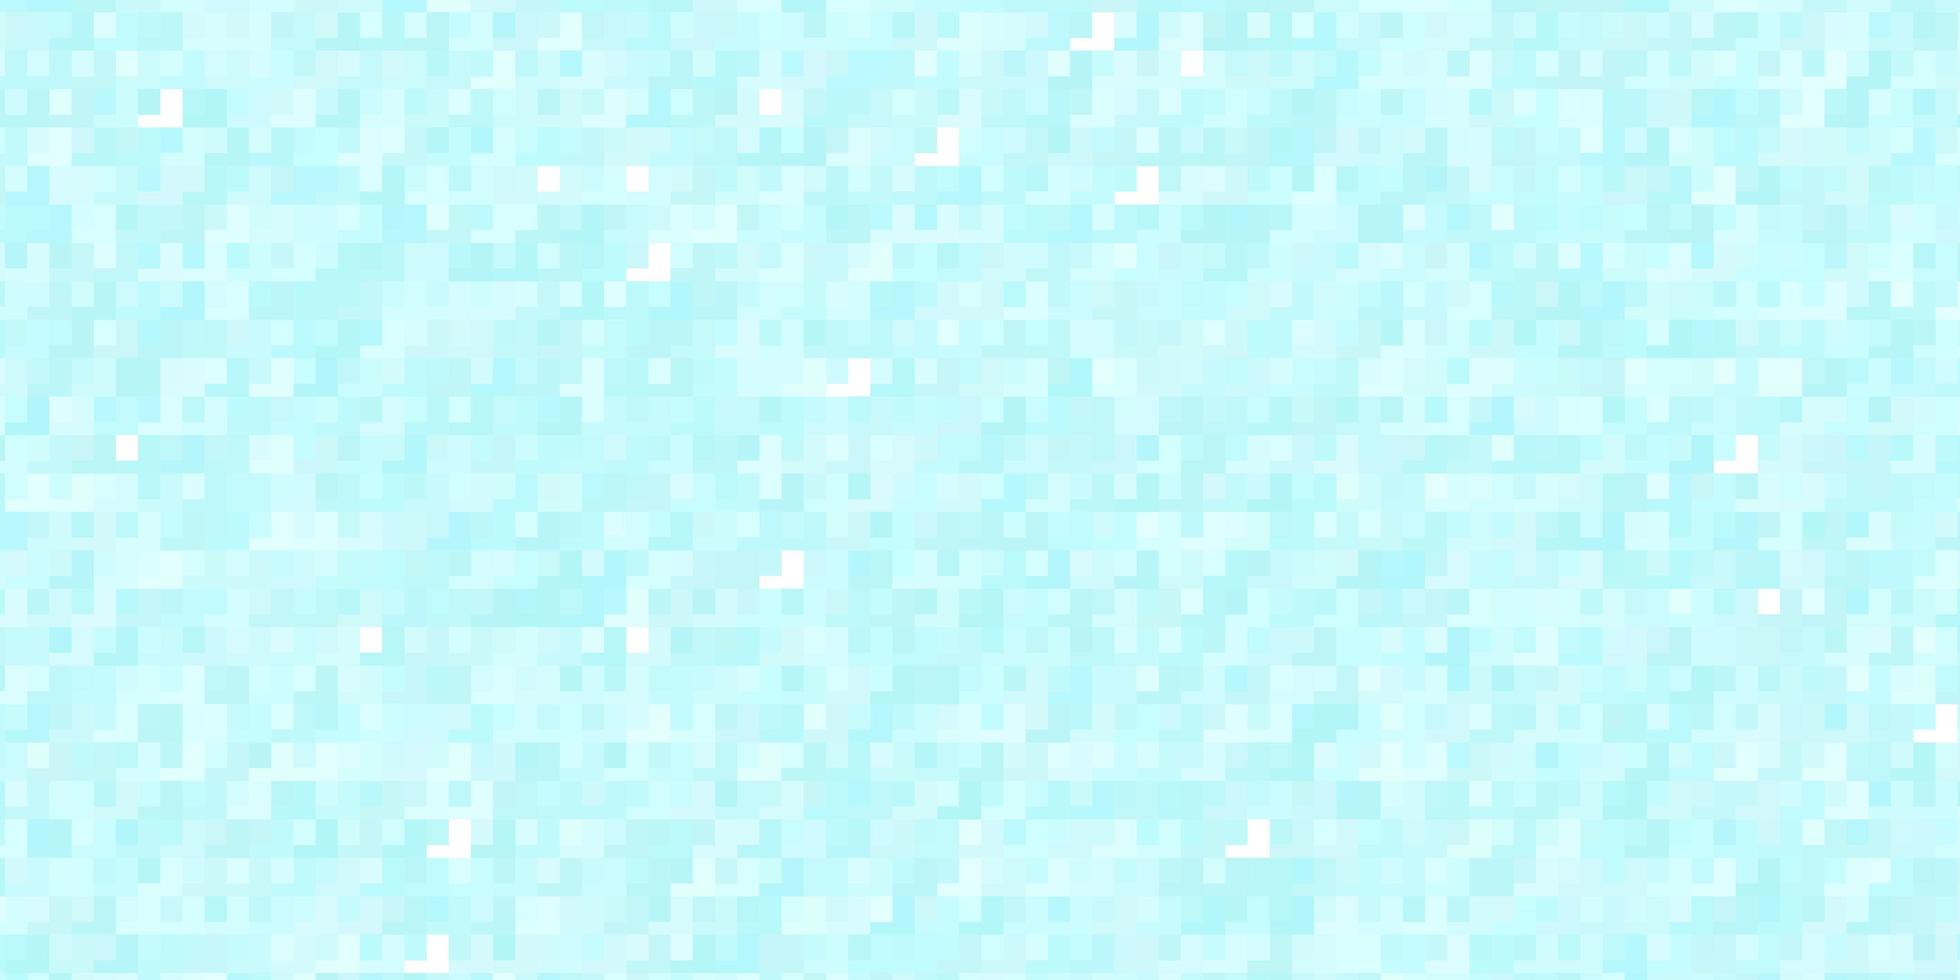 Fondo de vector azul claro en estilo poligonal Ilustración de degradado abstracto con patrón de rectángulos de colores para anuncios comerciales